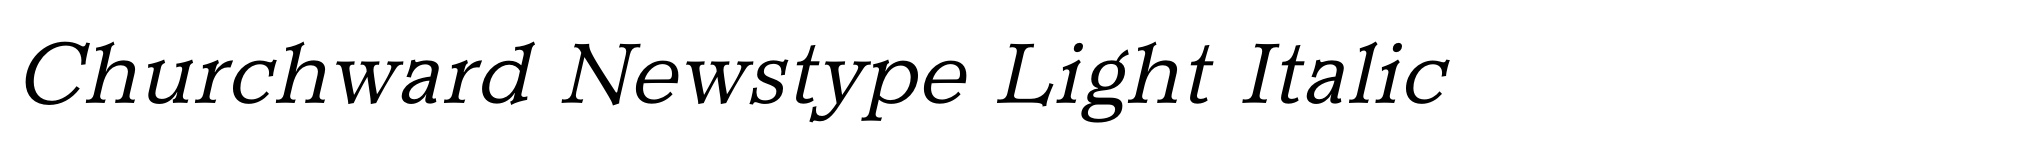 Churchward Newstype Light Italic image